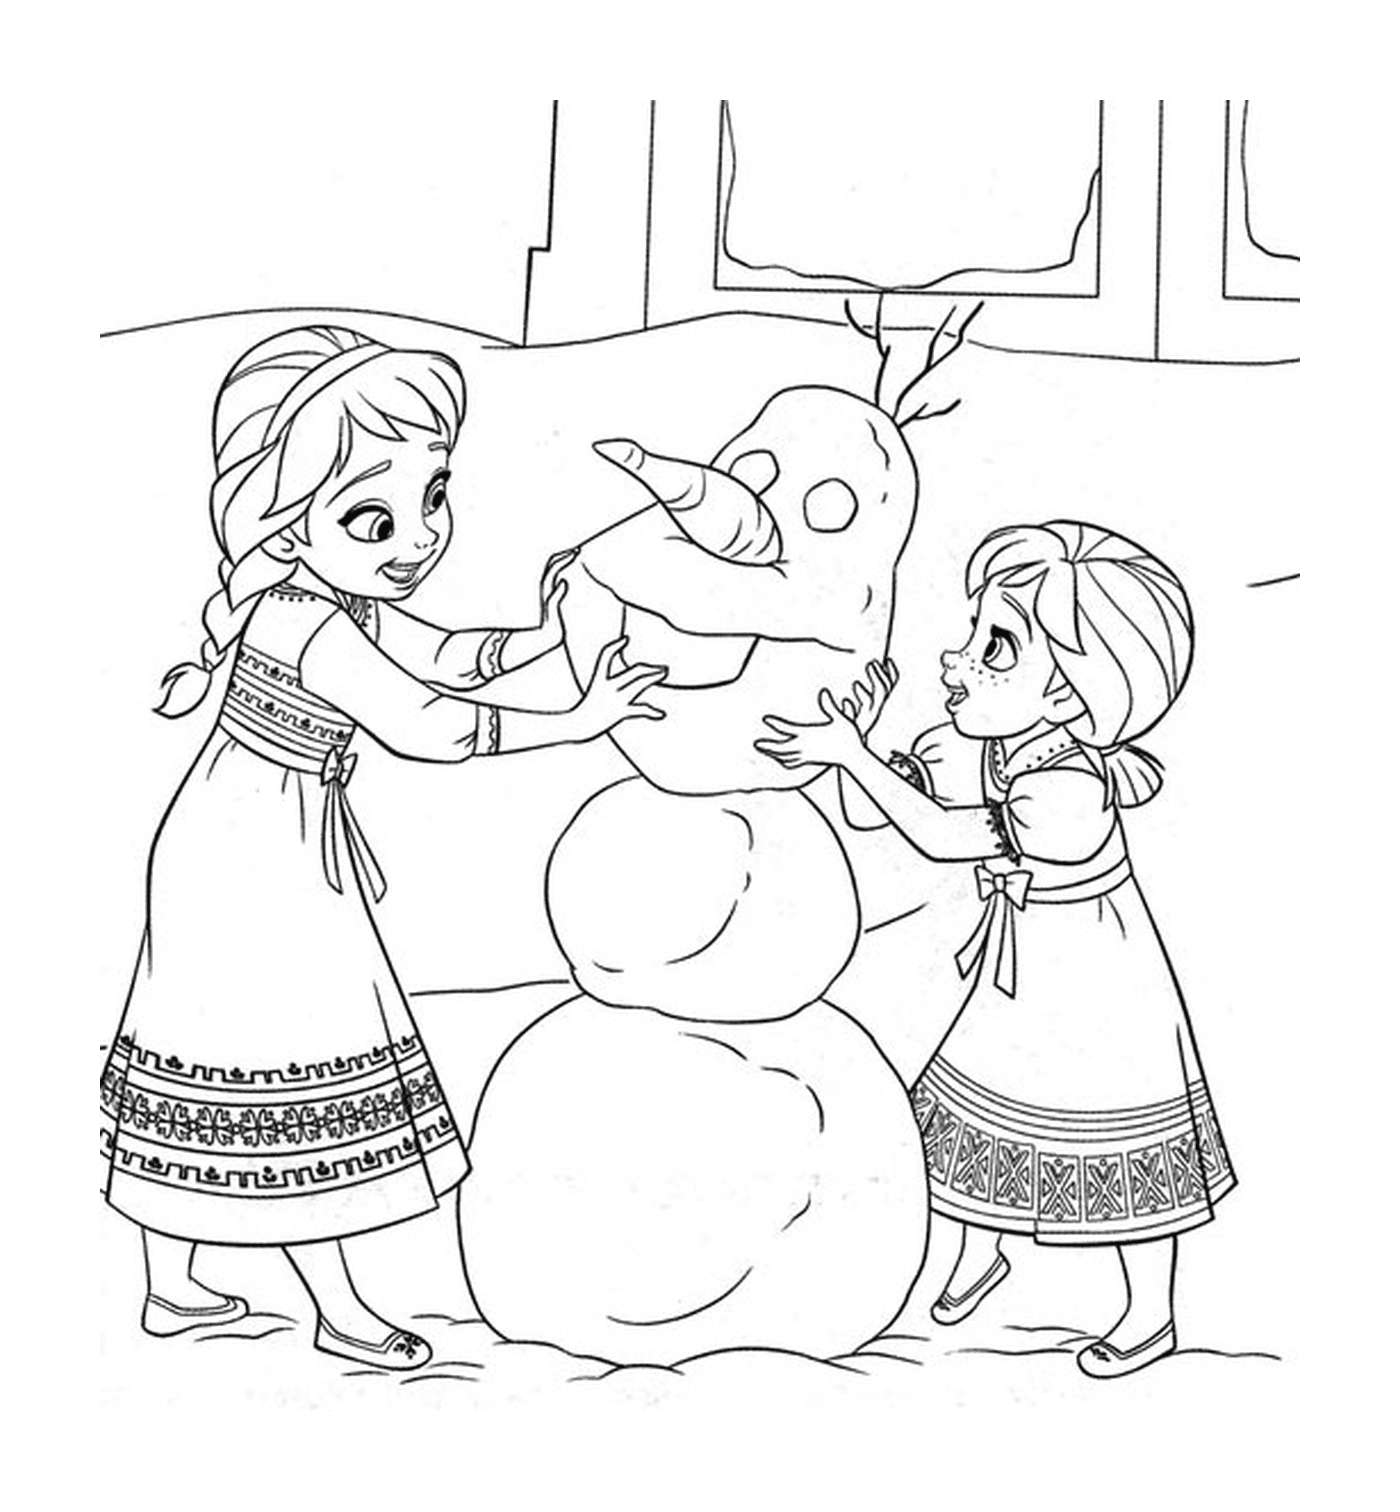  Dos niñas construyen un muñeco de nieve juntos 